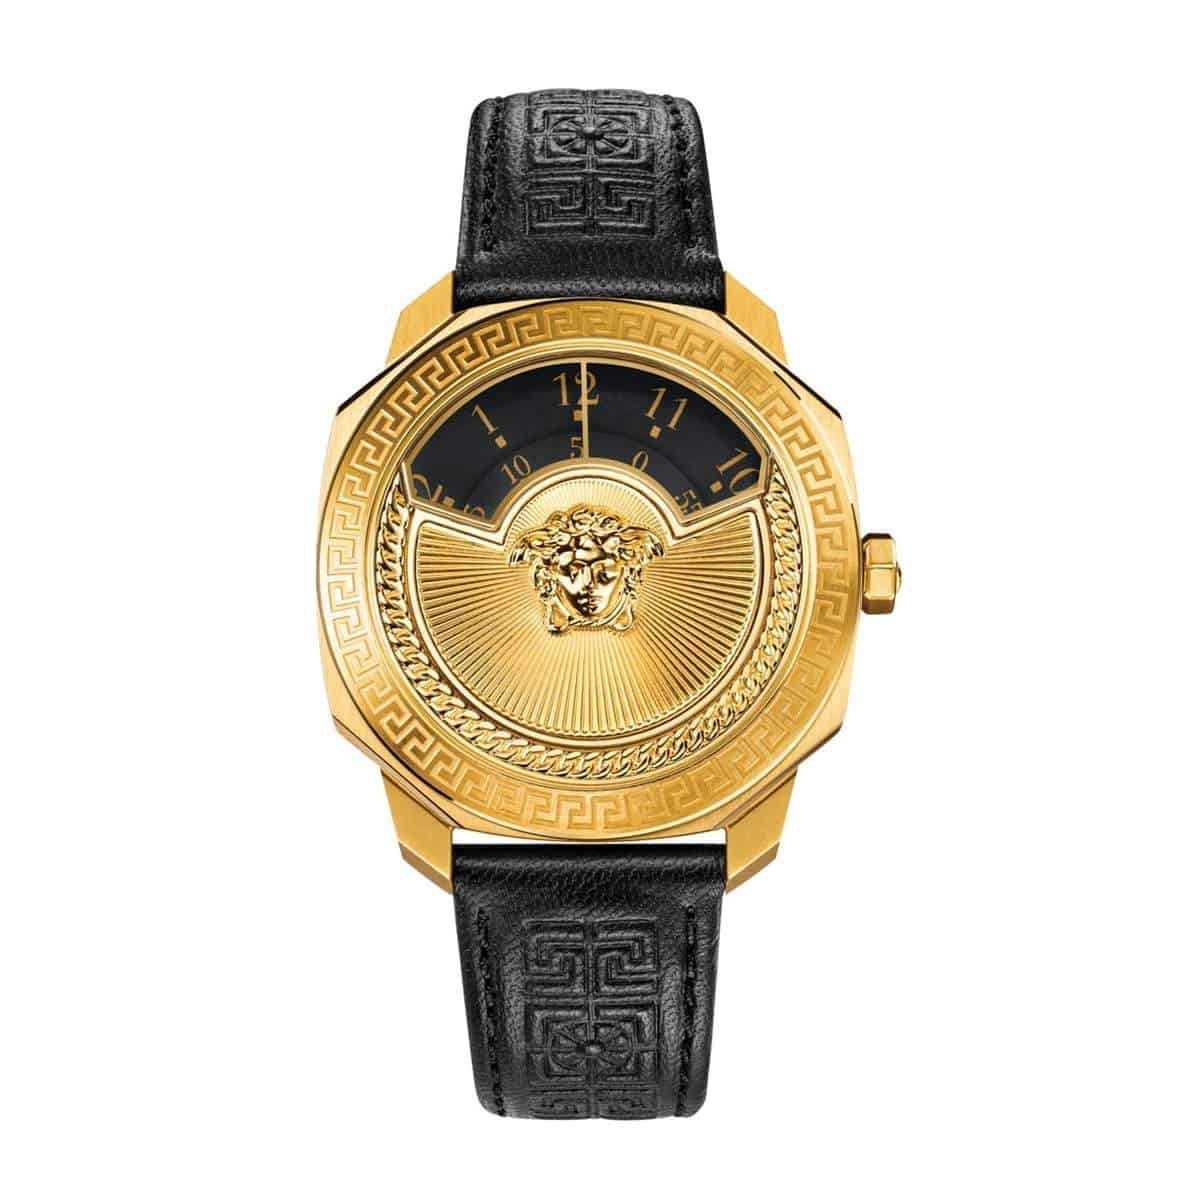 Thiết kế đồng hồ Versace Dylos Icon mang nguồn cảm hứng từ điện ảnh.